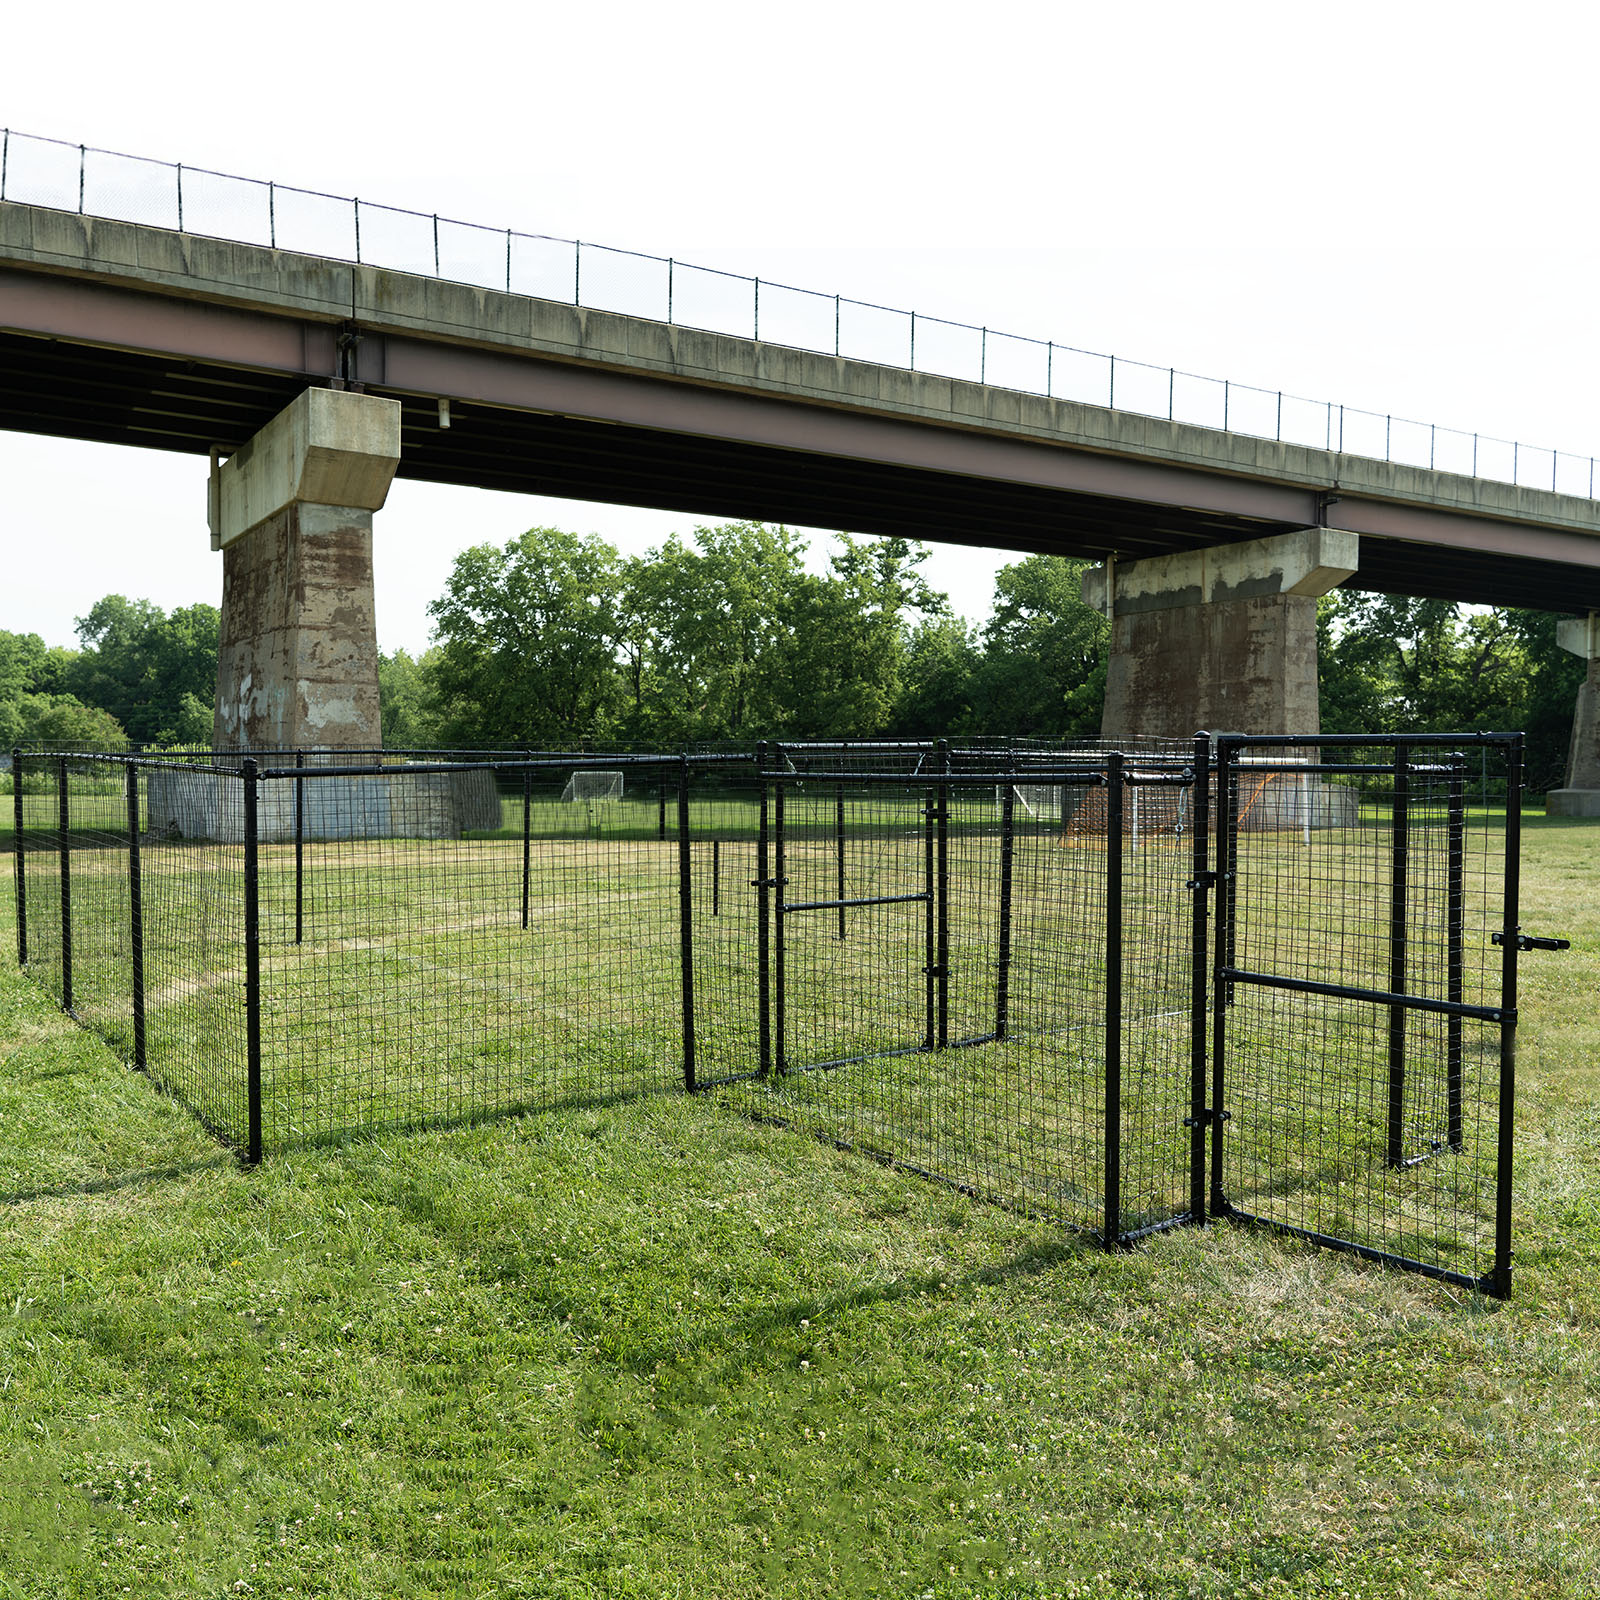 Dog park set up under an overpass.